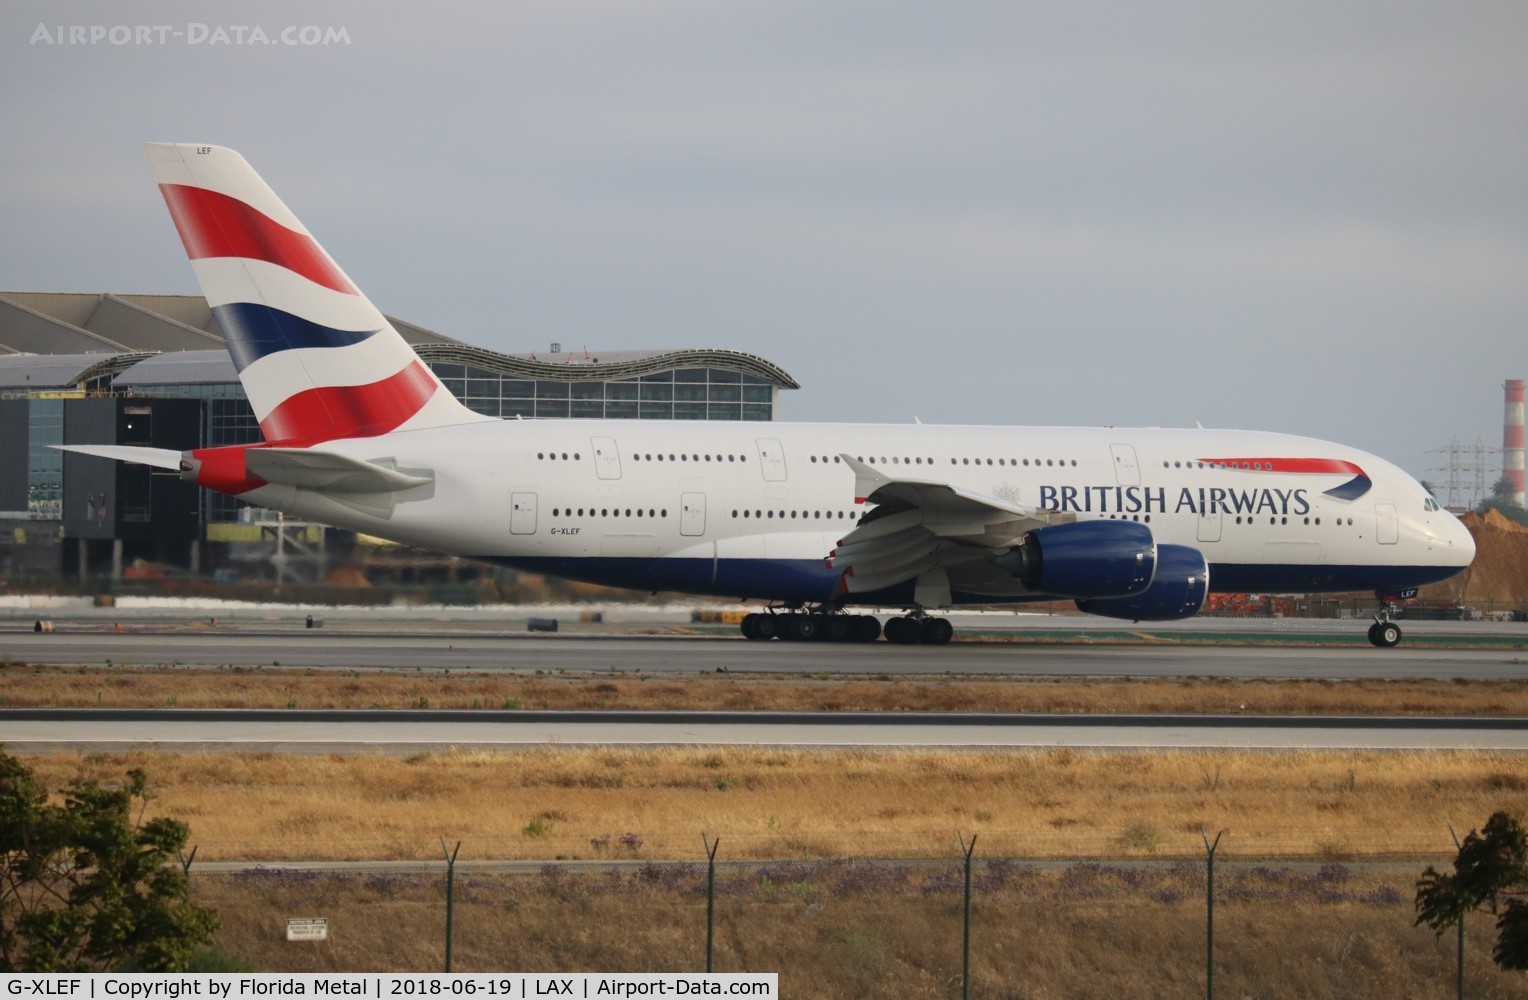 G-XLEF, 2013 Airbus A380-841 C/N 151, British